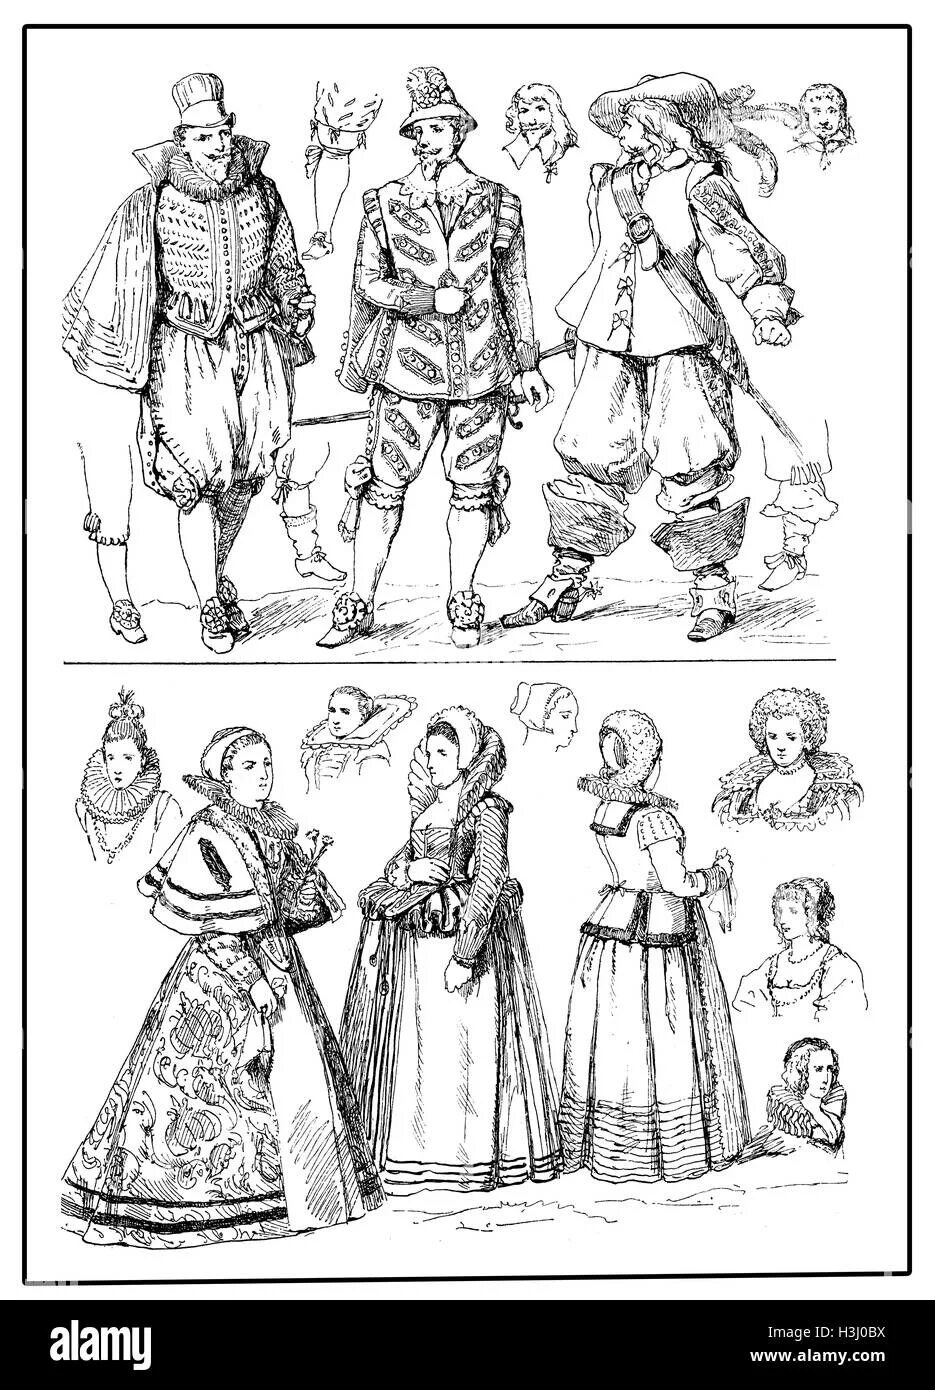 Костюм западной европы 17 века. Западноевропейский костюм 17 века рисунок. Костюм Западной Европы 17 века рисунки. Бальный костюм 17 века рисунок.